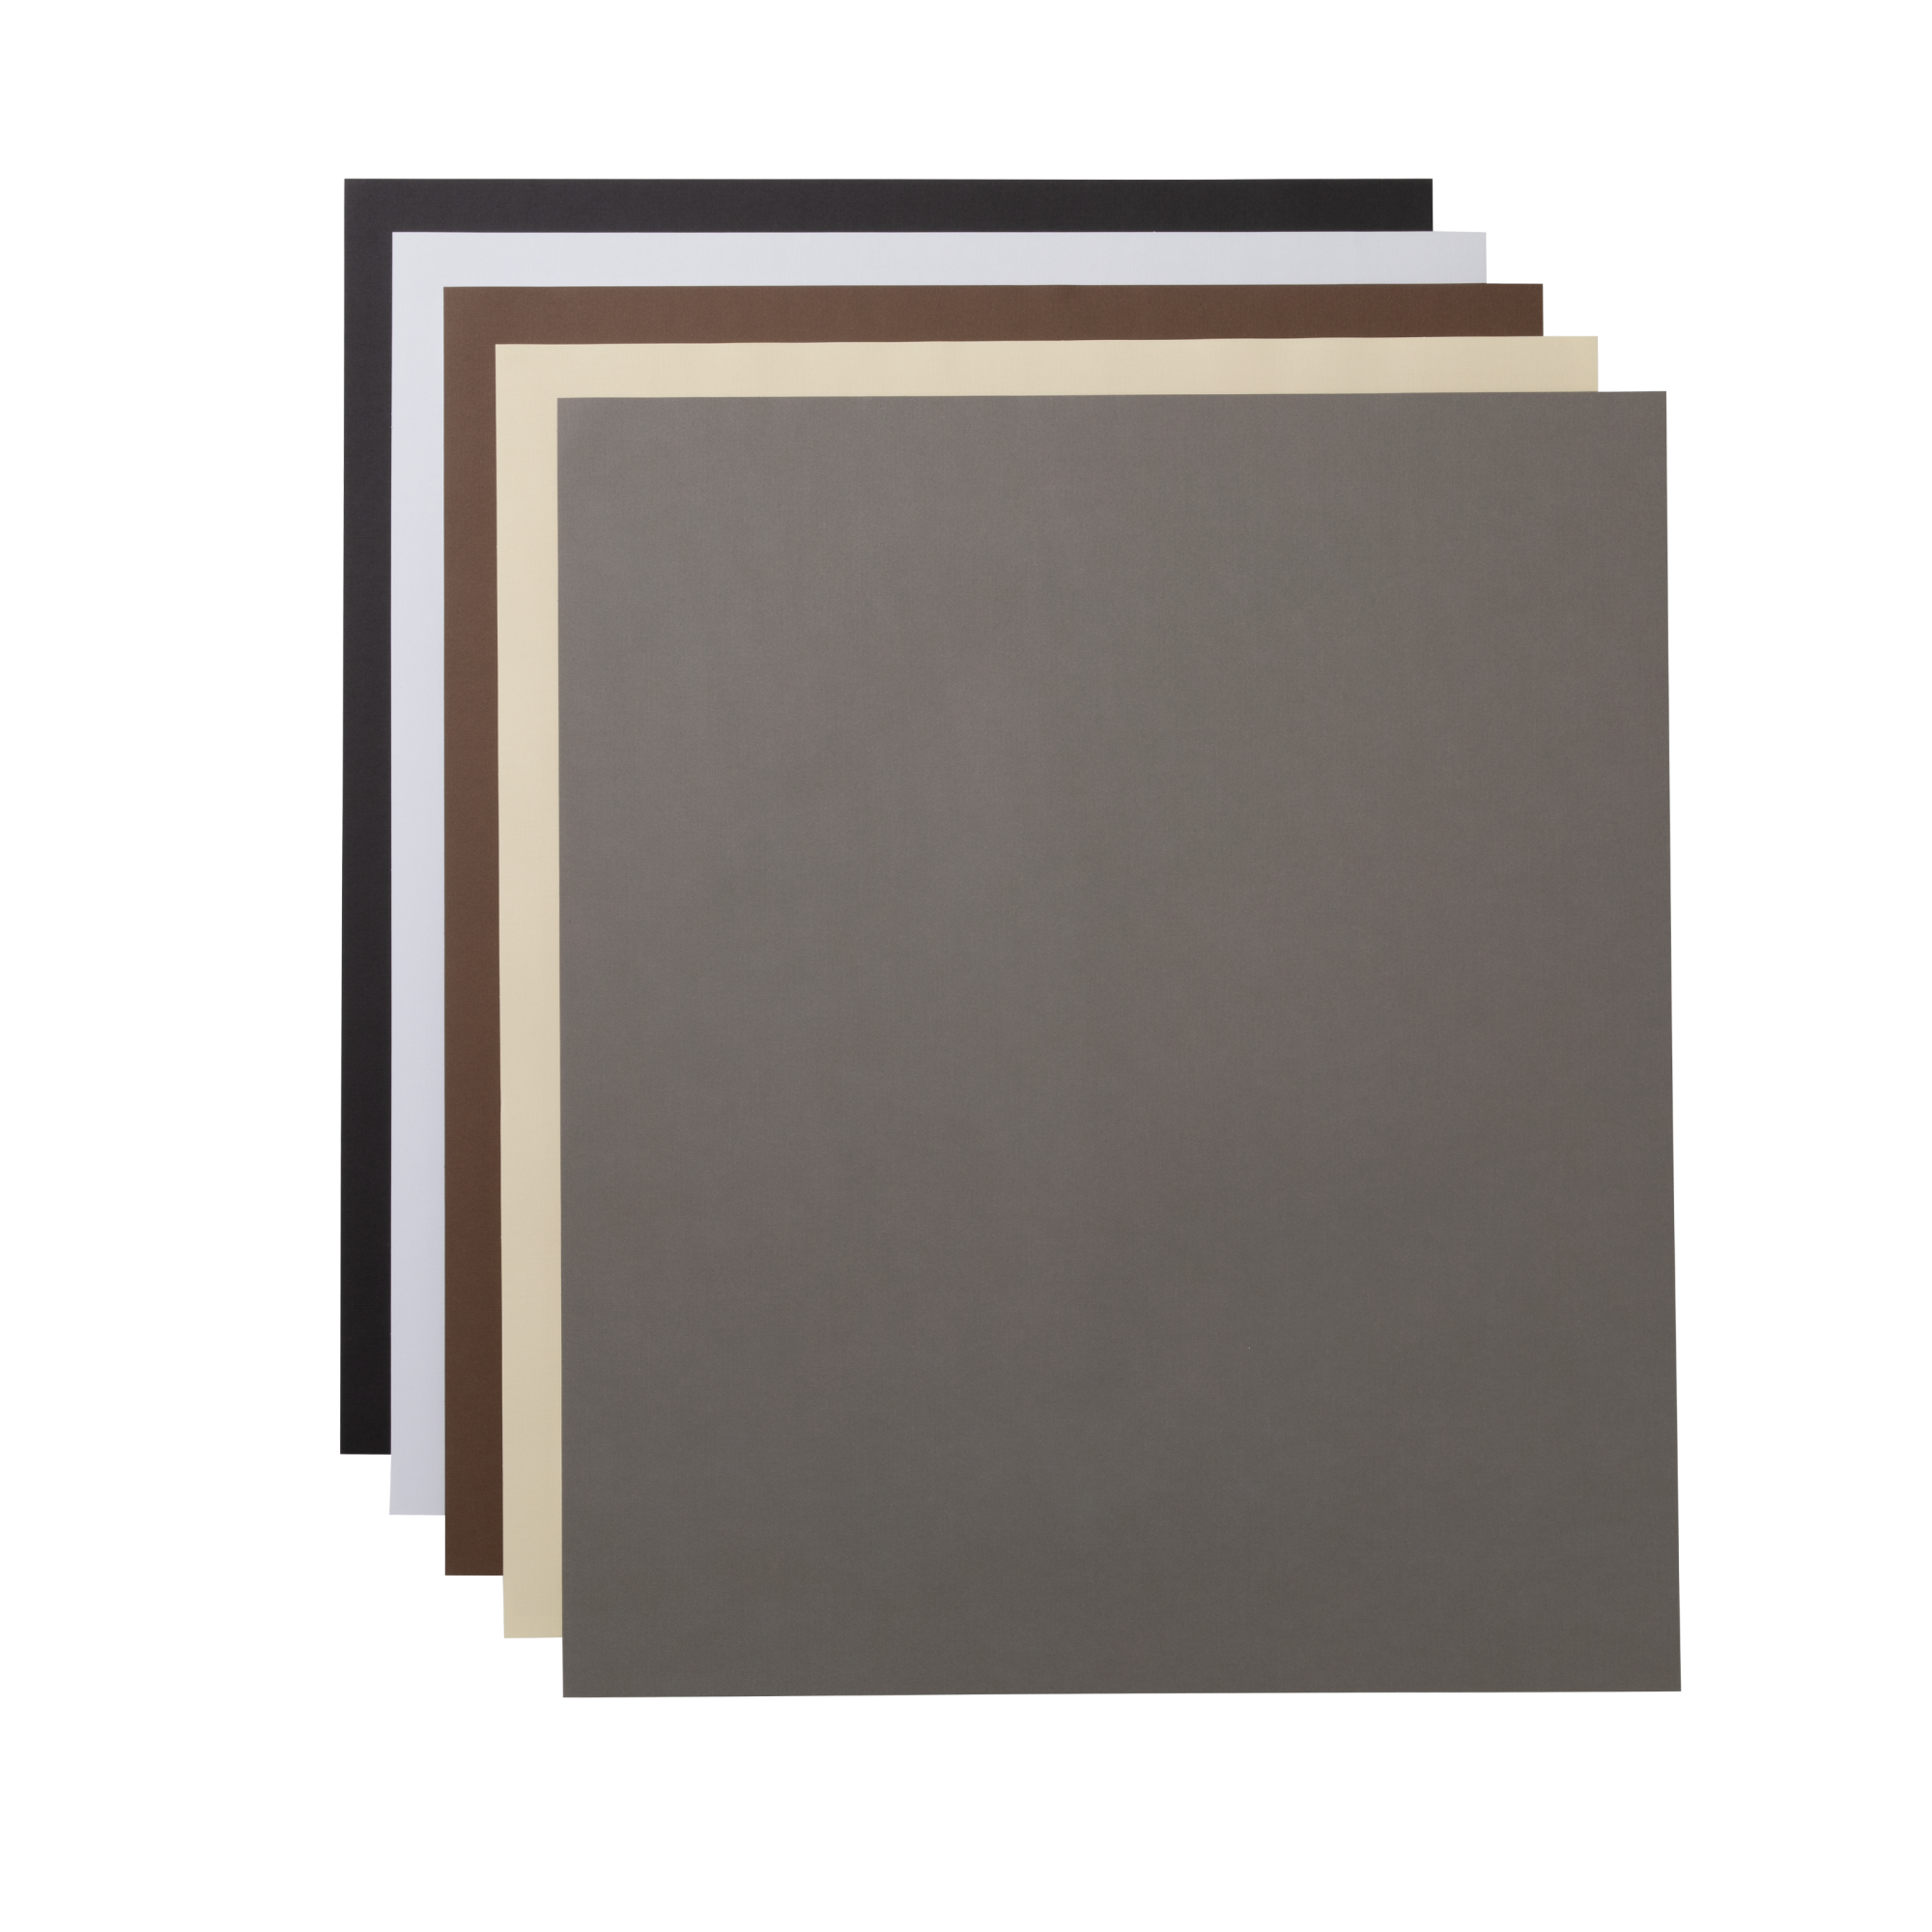 Papier cartonné, collection Neutrals - 60,9 cm x 71,1 cm (24 po x